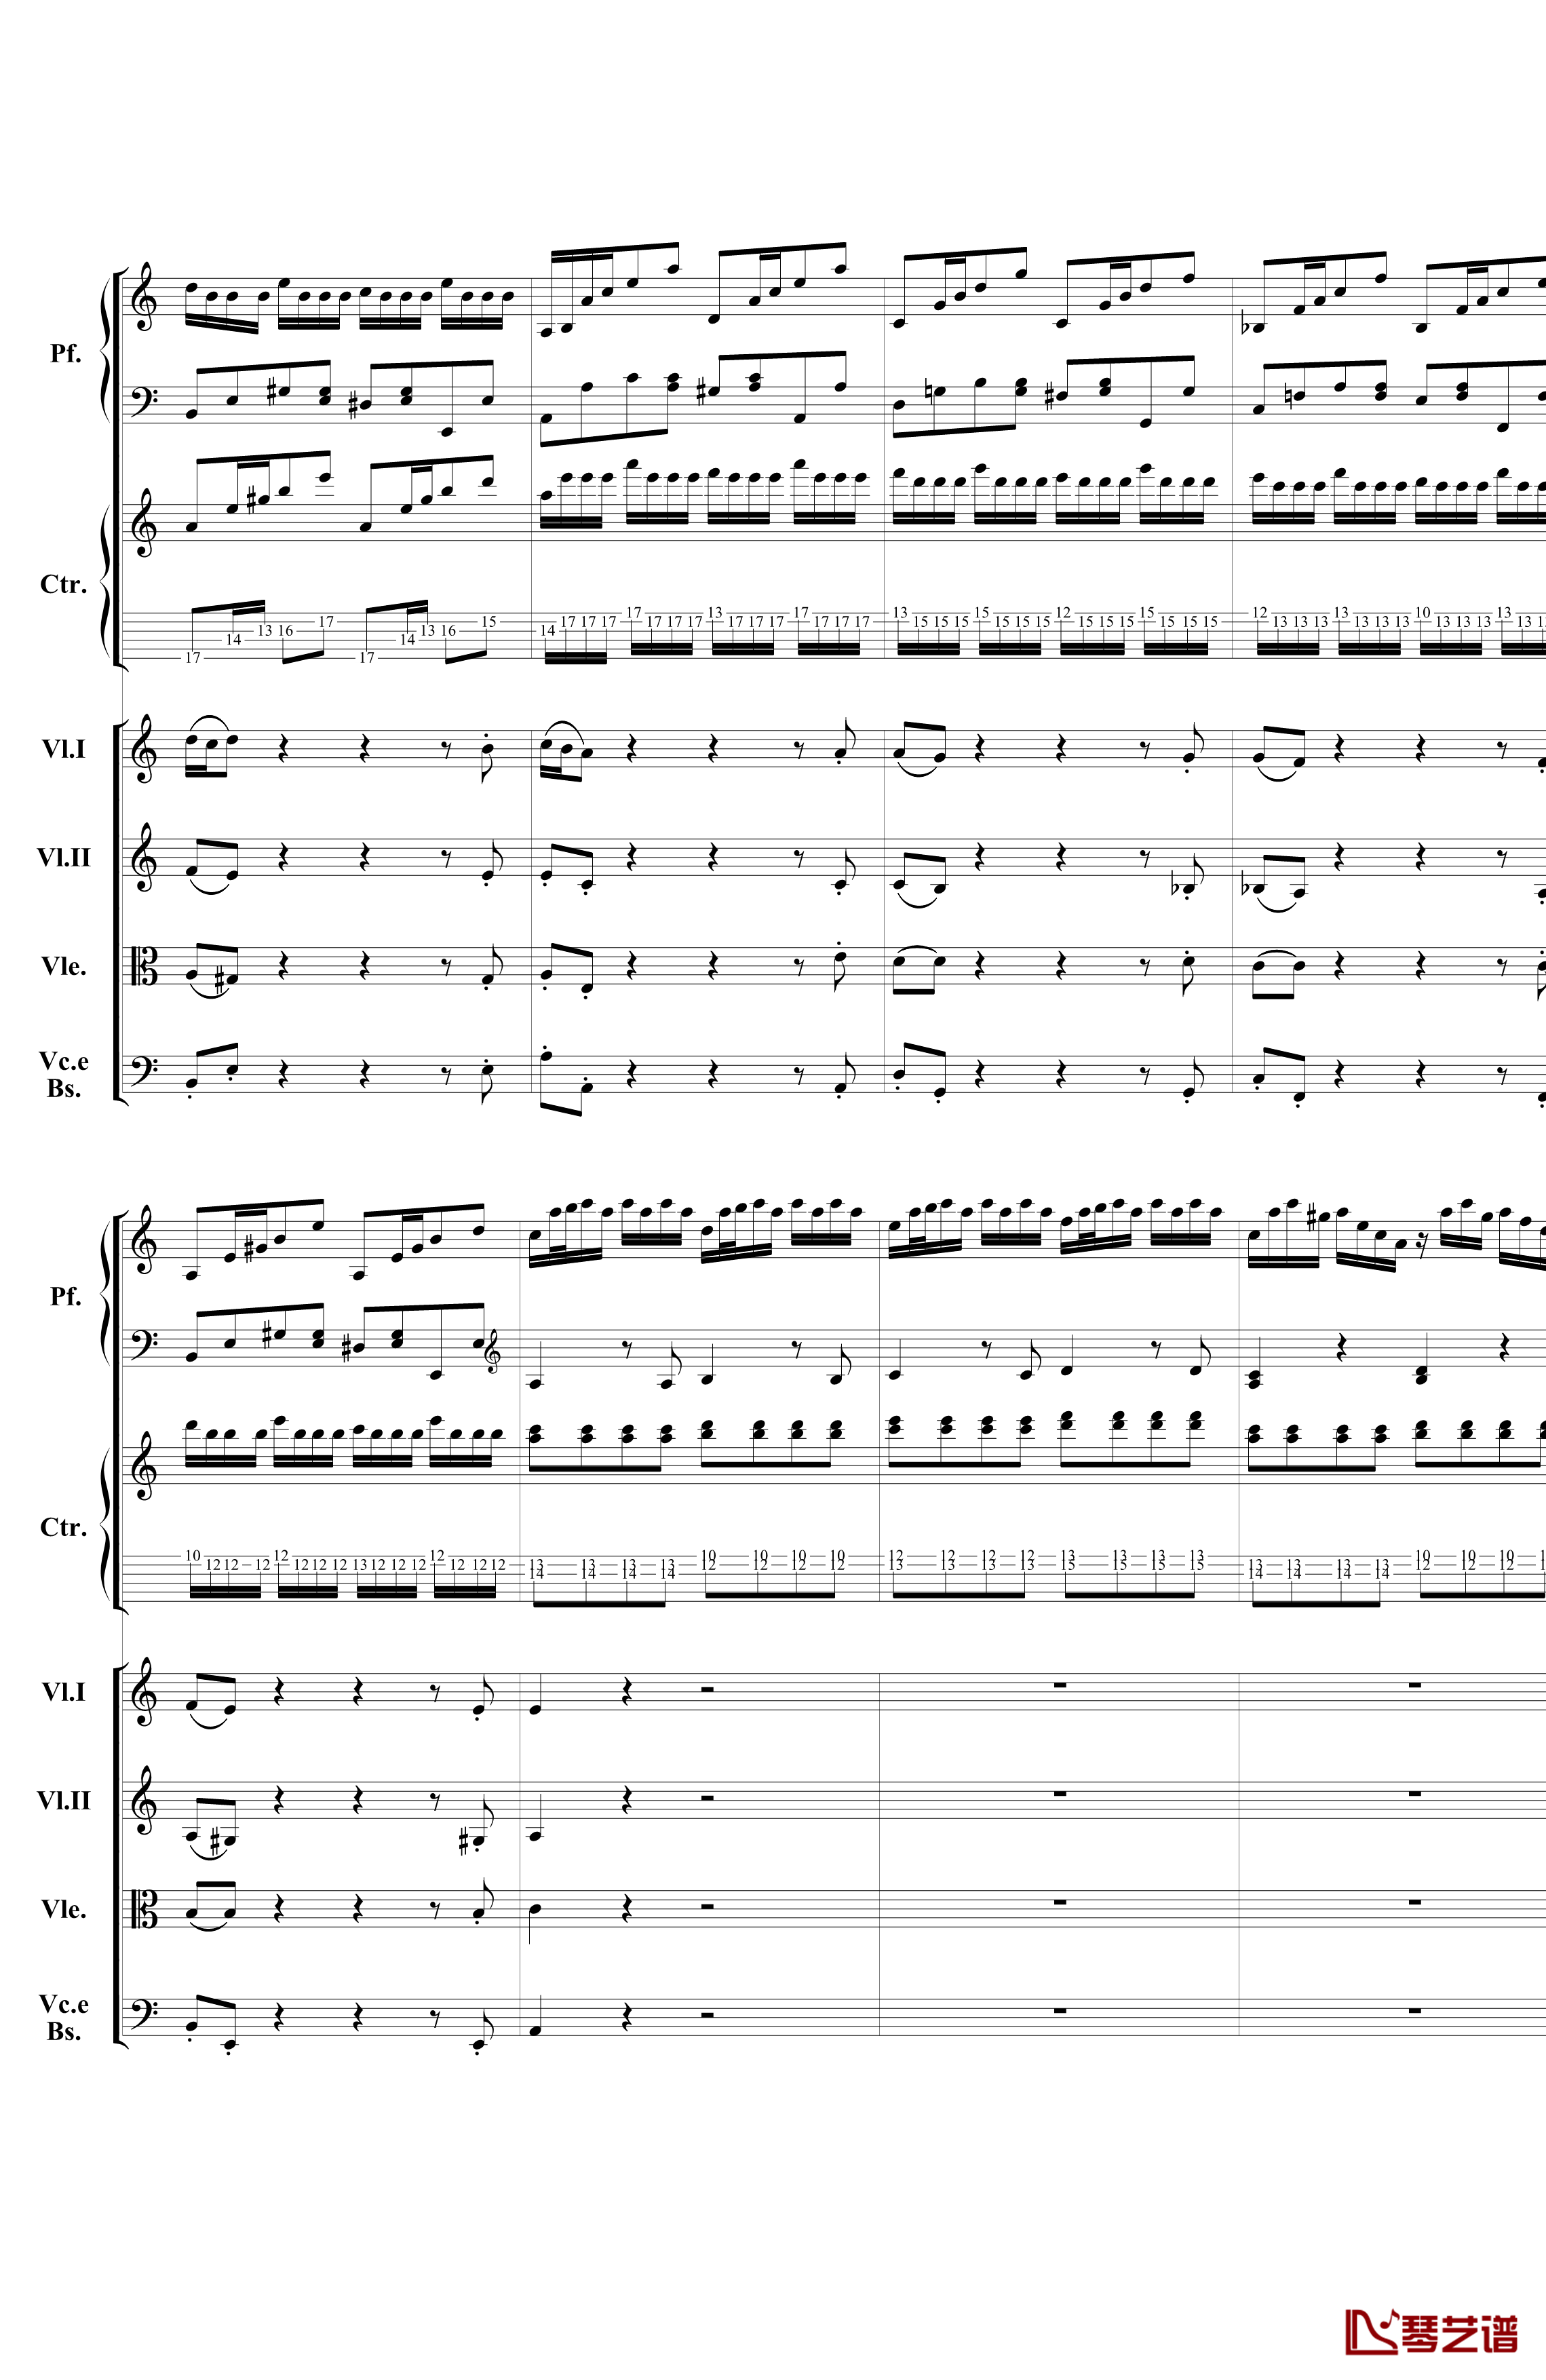 巴赫为四架钢琴写的钢琴协奏曲钢琴谱-钢琴吉他弦乐组-巴哈-Bach, Johann Sebastian11